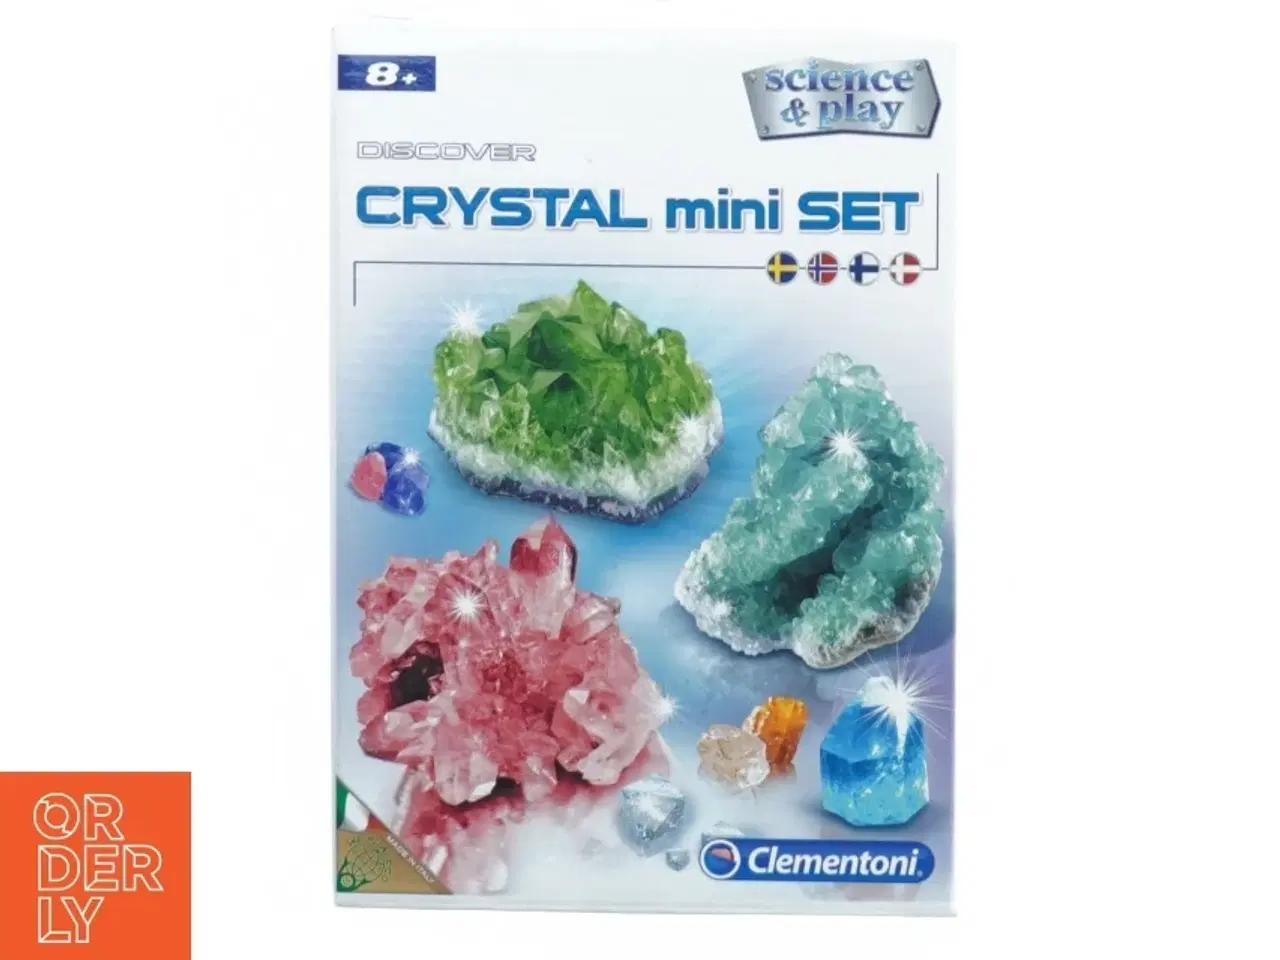 Billede 1 - Discover Crystal mini set fra Clementoni (str. 21 x 15 x 5 cm)